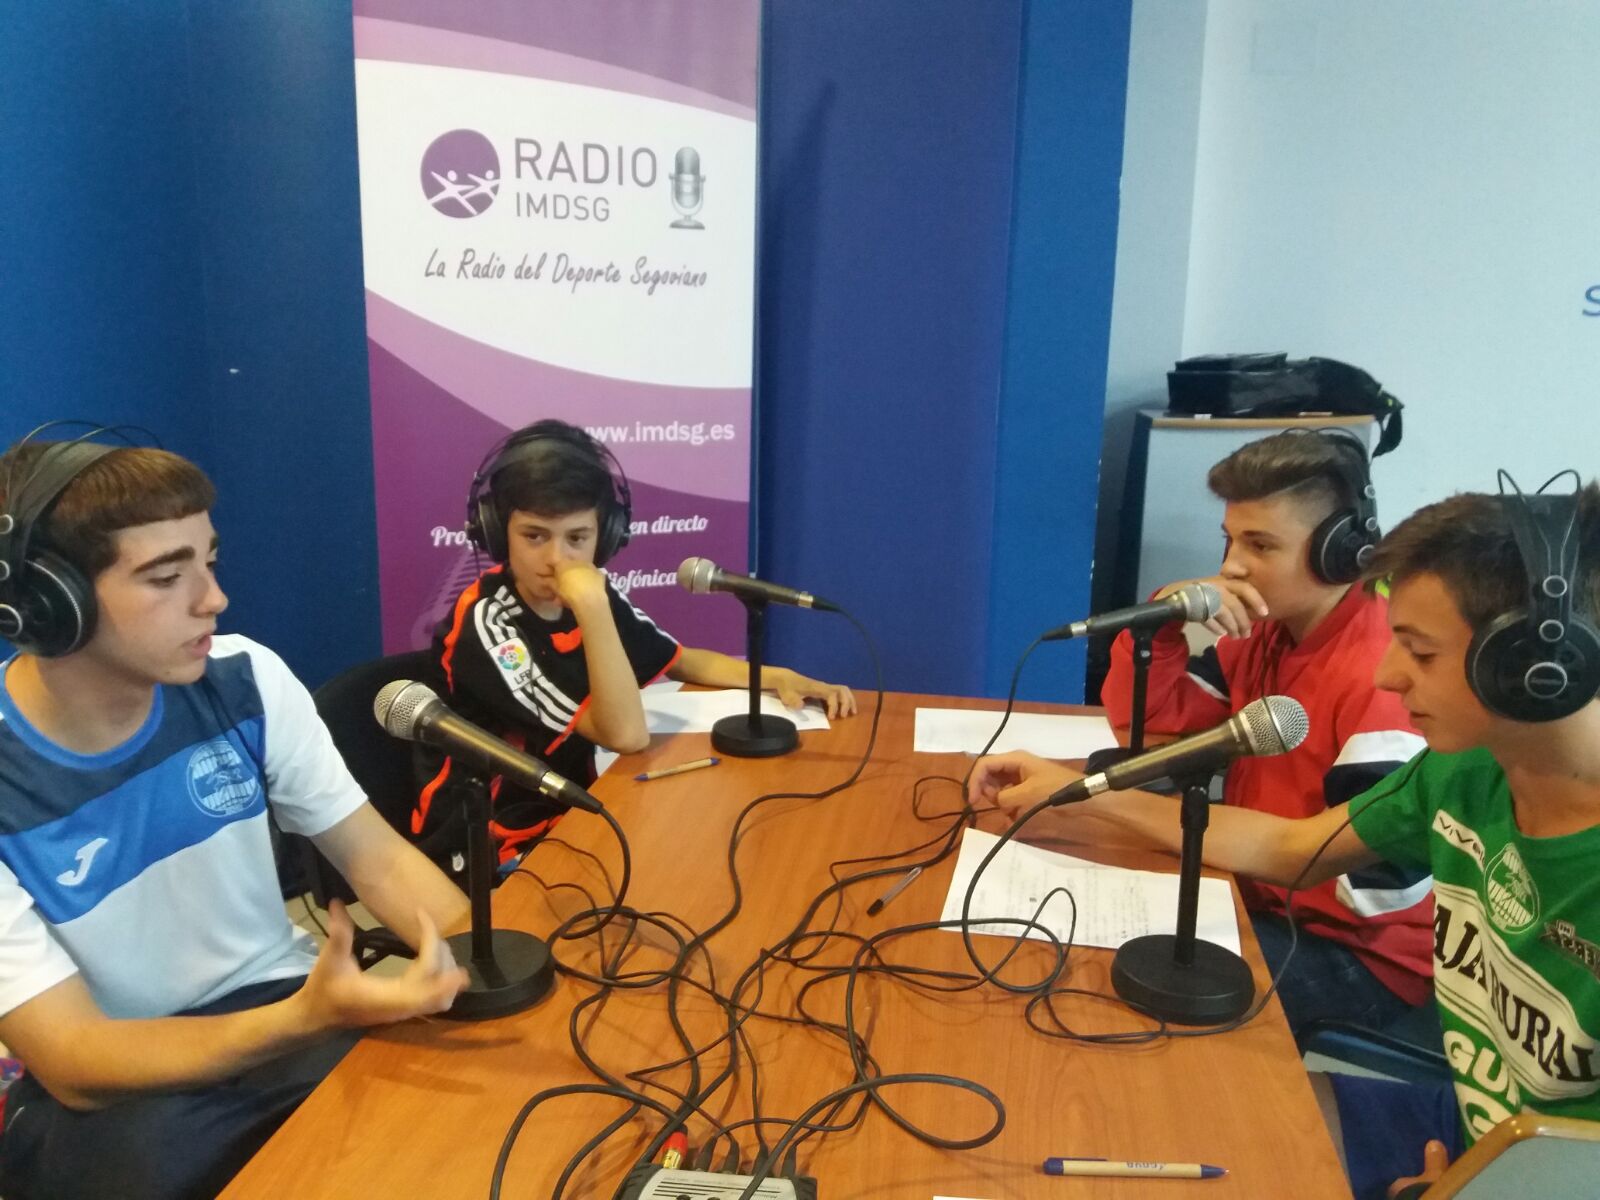 Radio IMD: la Radio del deporte segoviano